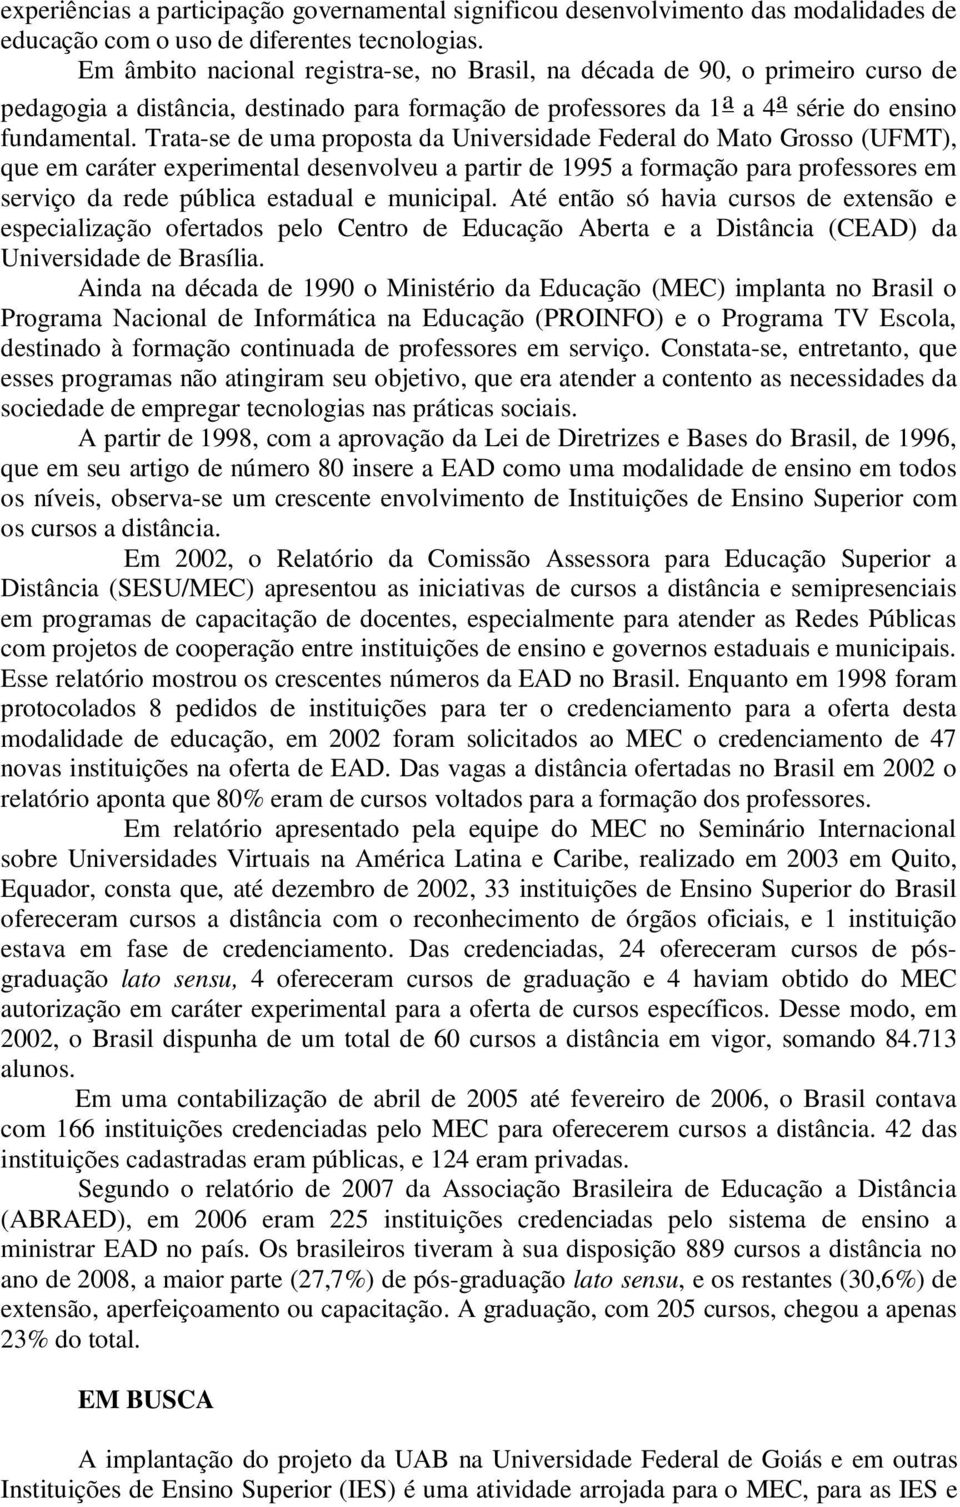 Trata-se de uma proposta da Universidade Federal do Mato Grosso (UFMT), que em caráter experimental desenvolveu a partir de 1995 a formação para professores em serviço da rede pública estadual e